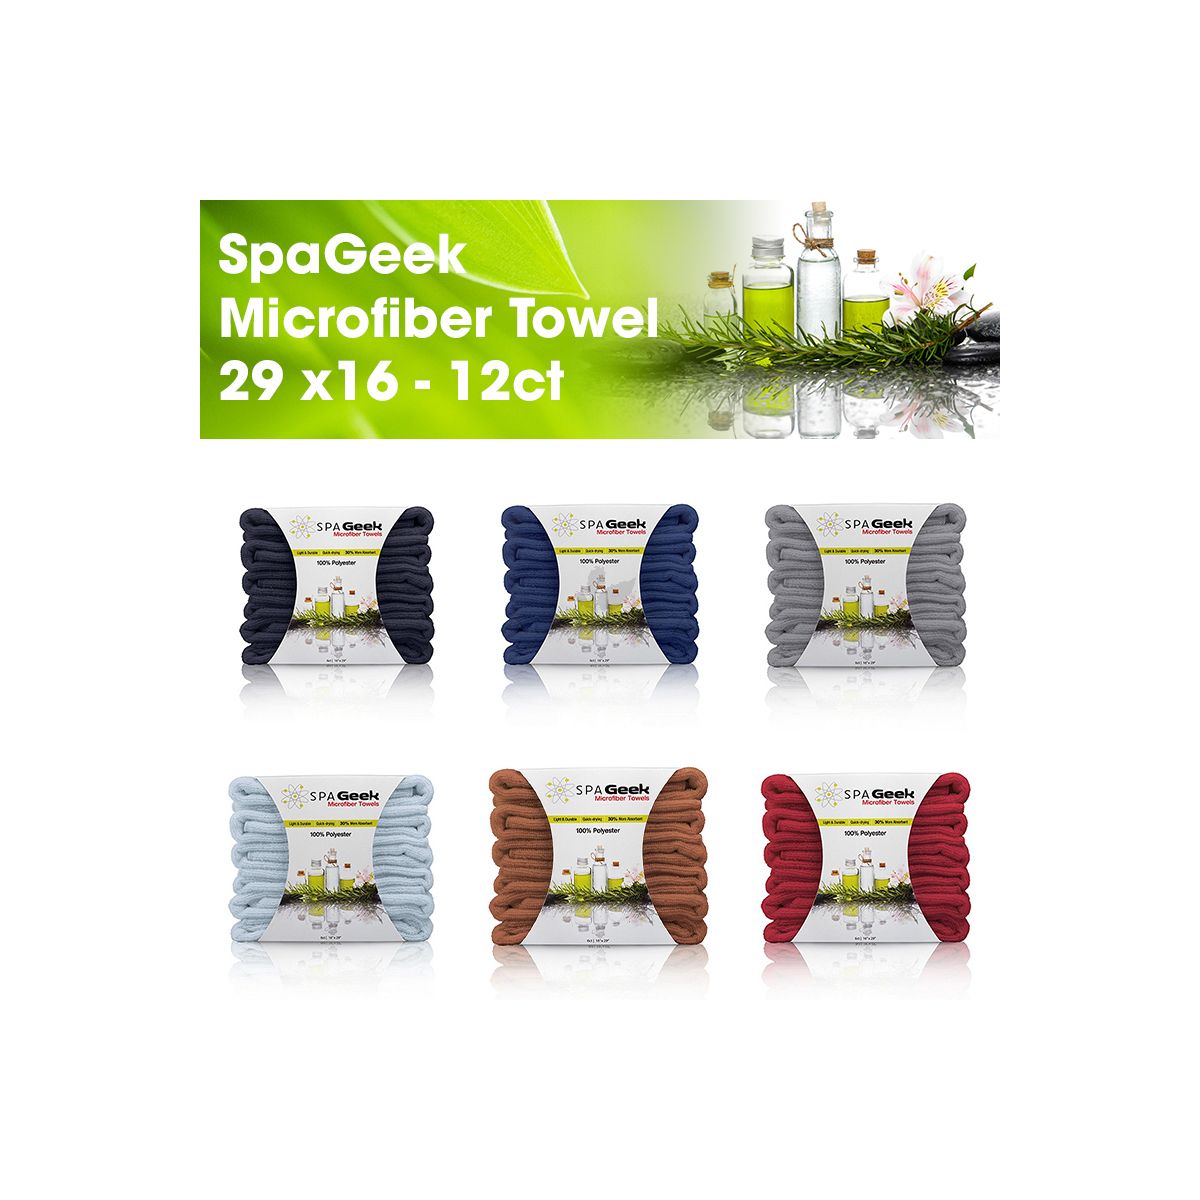 SpaGeek Microfiber Towel 29 x16 - 12ct